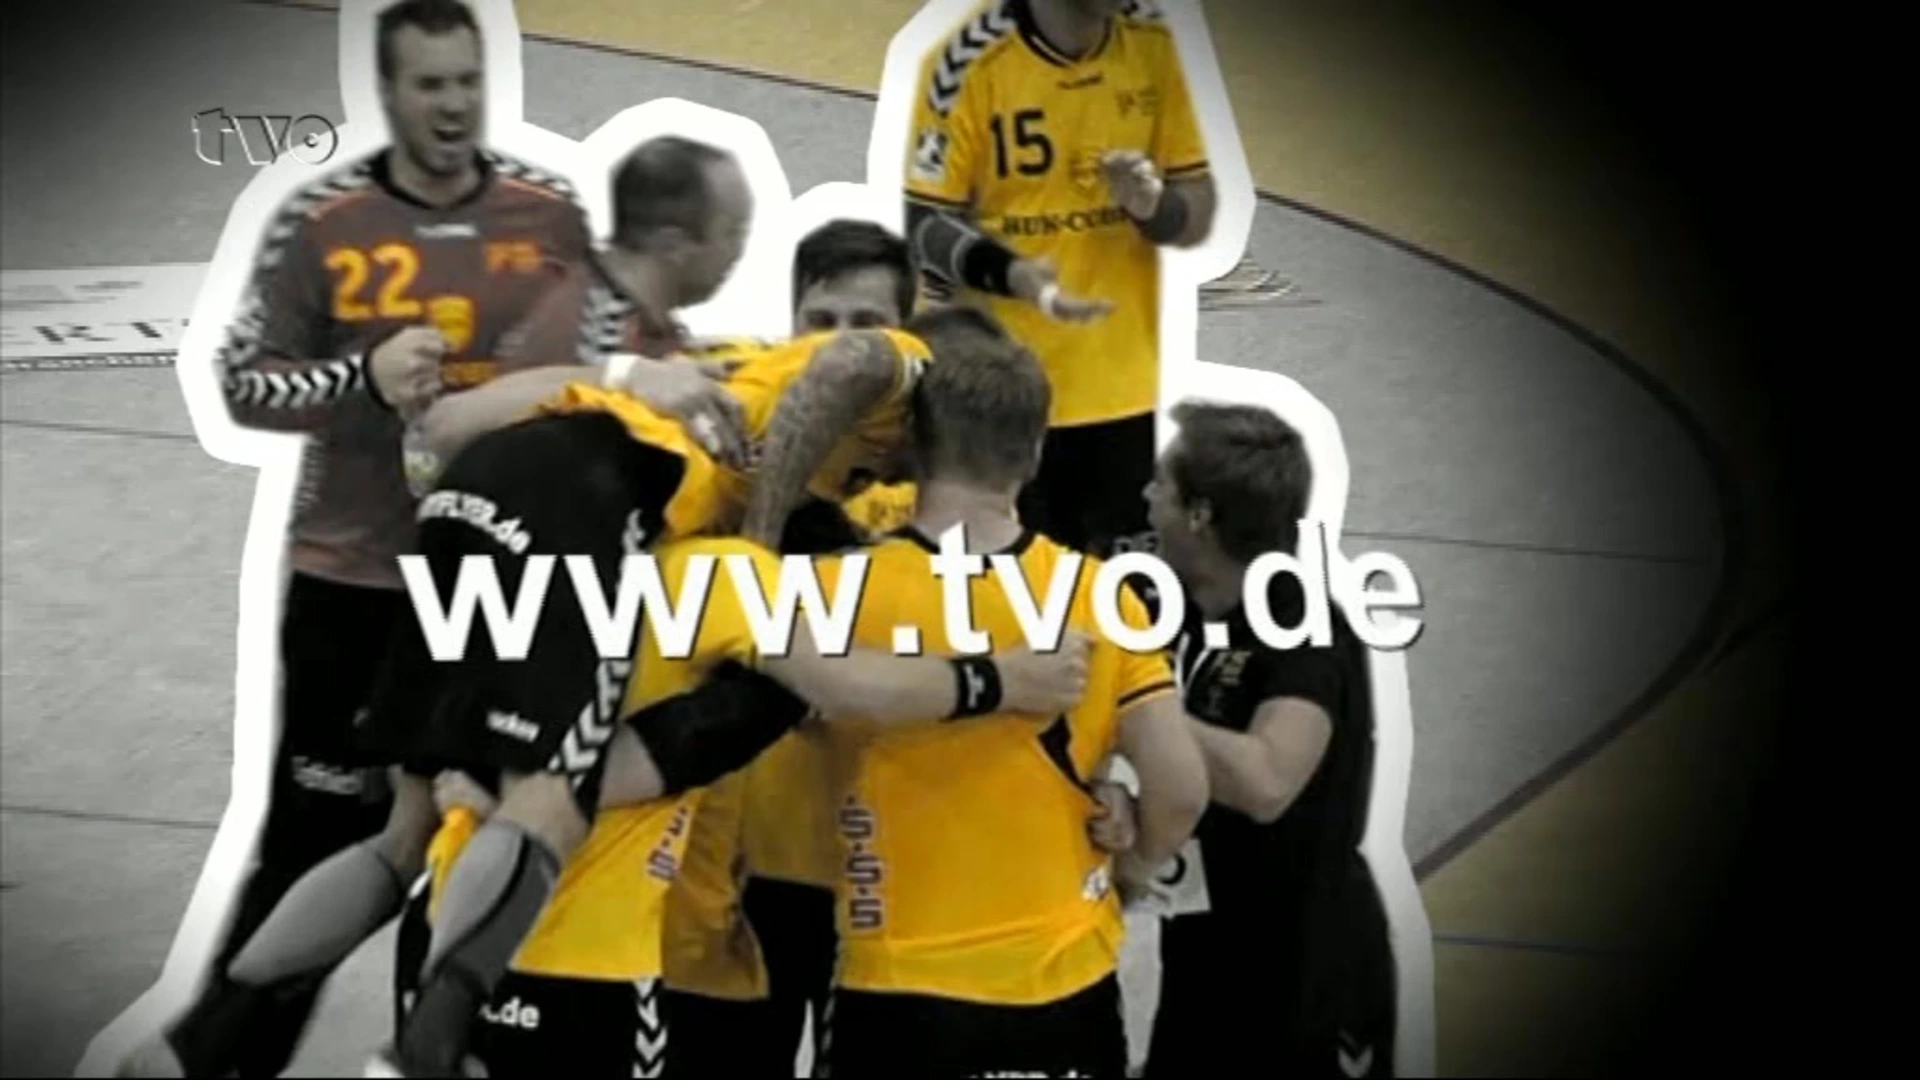 Coburg Handball Live bei tvo.de am Sonntag! tvo.de